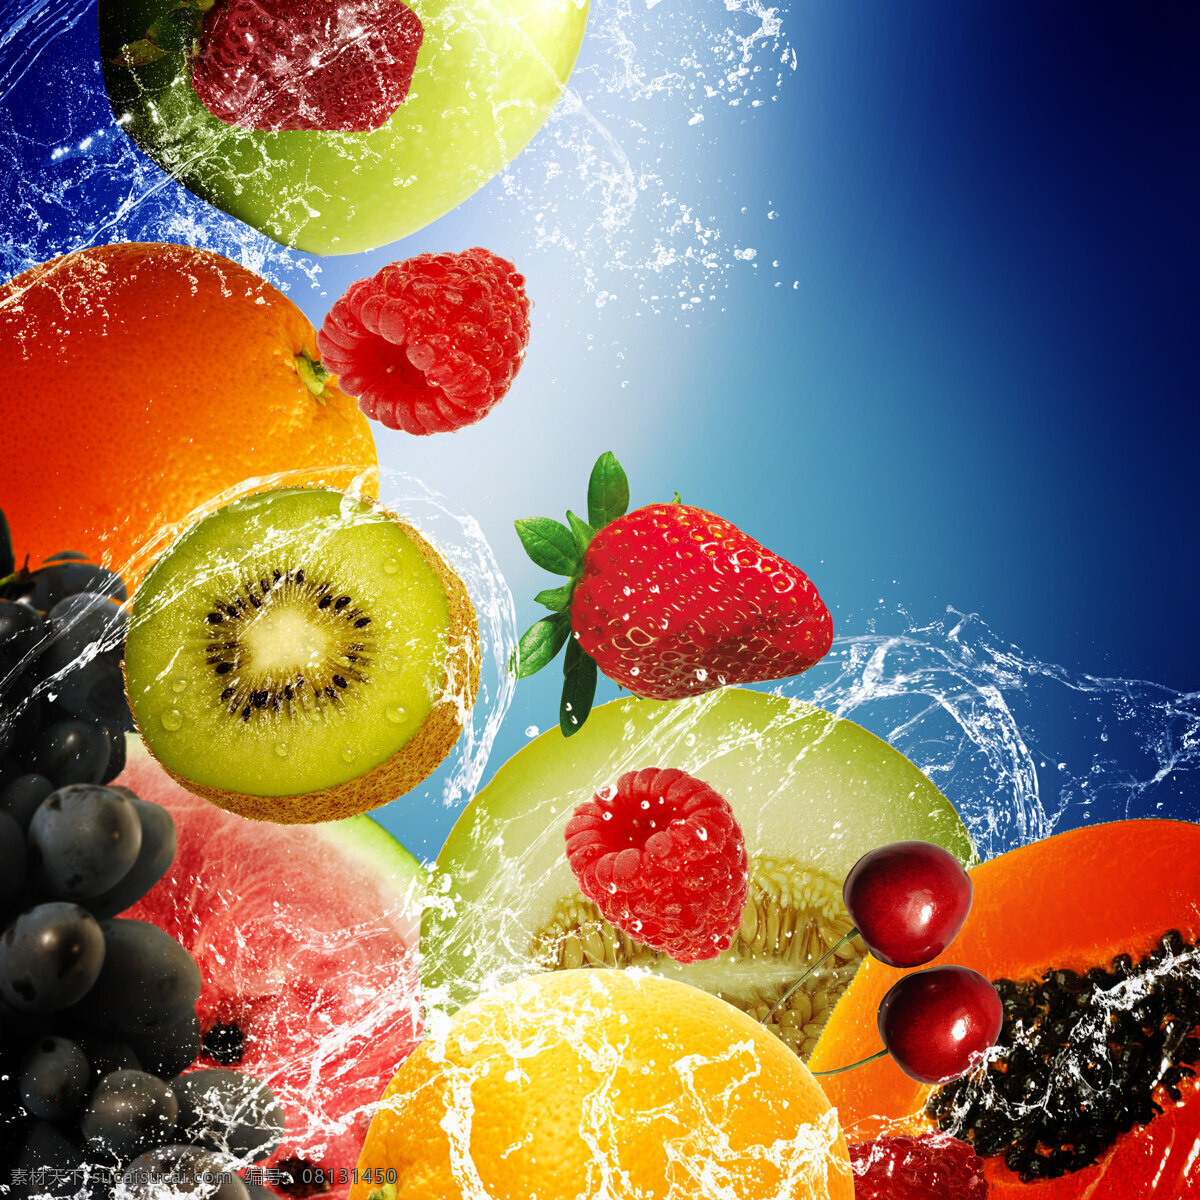 水中水果 水中草莓 水中 草莓 鲜橙 桔子 樱桃 猕猴桃 弥猴桃 营养美味 水果 新鲜水果 水滴 水浪 水花 美味水果 生物世界